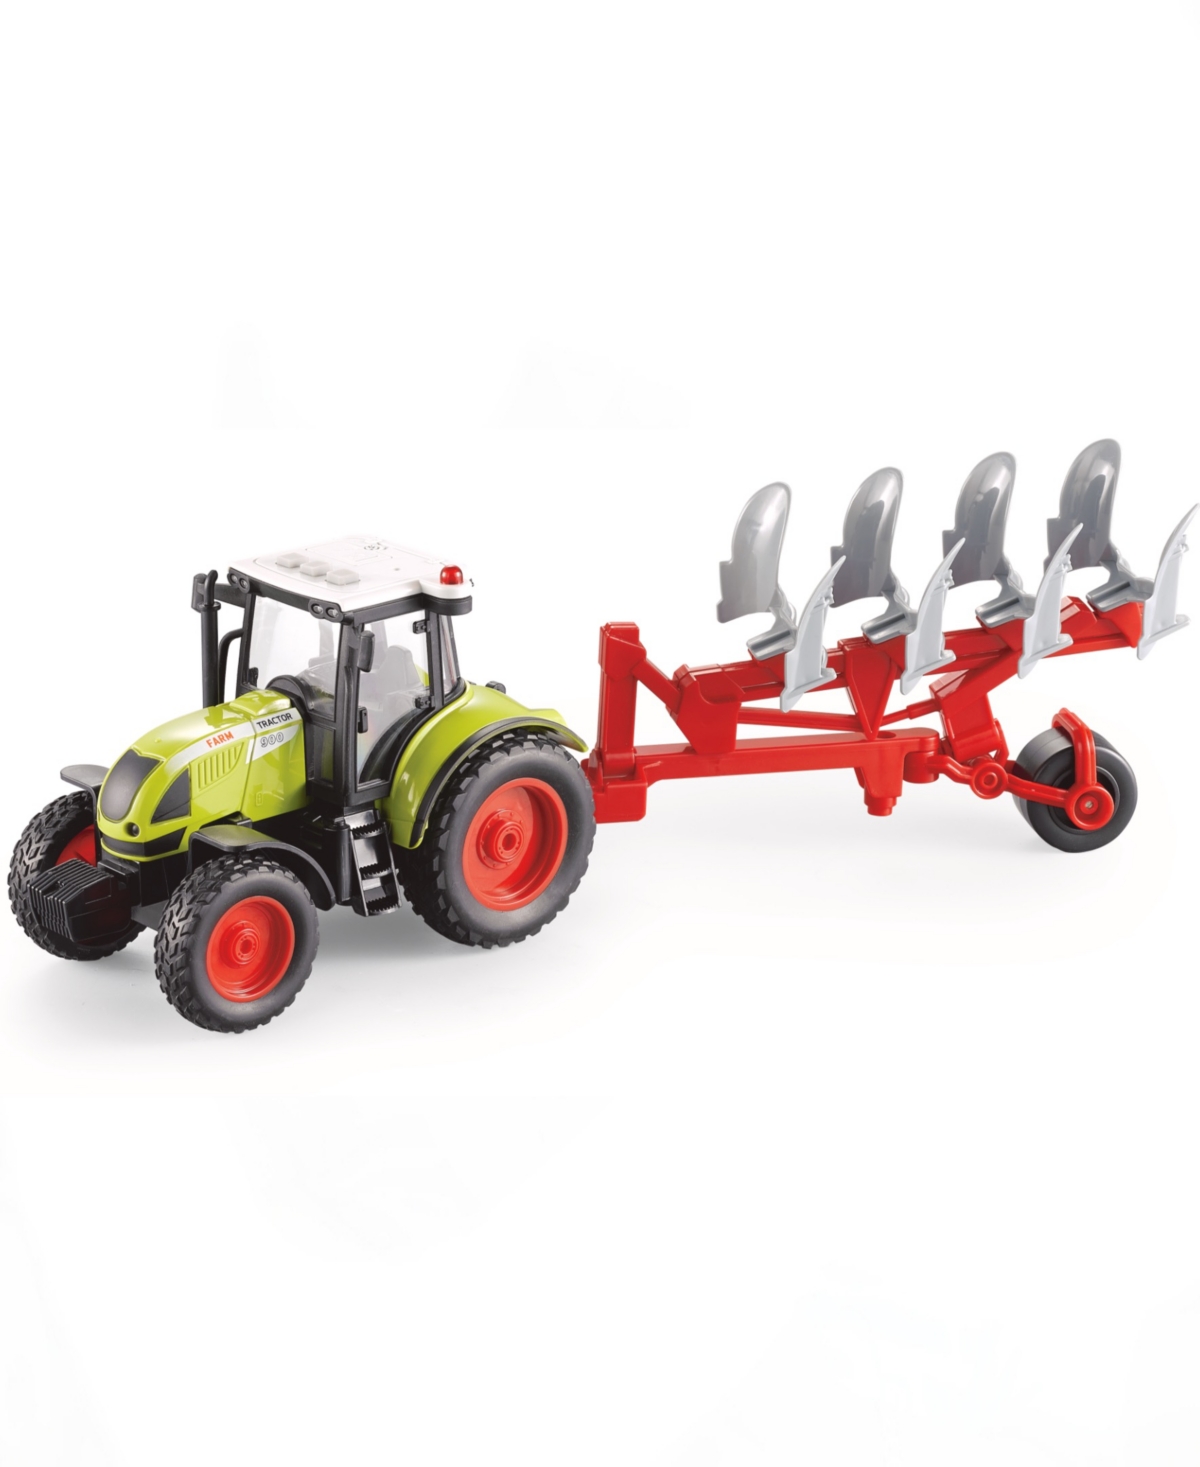 Big Daddy Babies' Farmland Soil Fertilizer Farming Tractor Trailer In Multi Colored Plastic